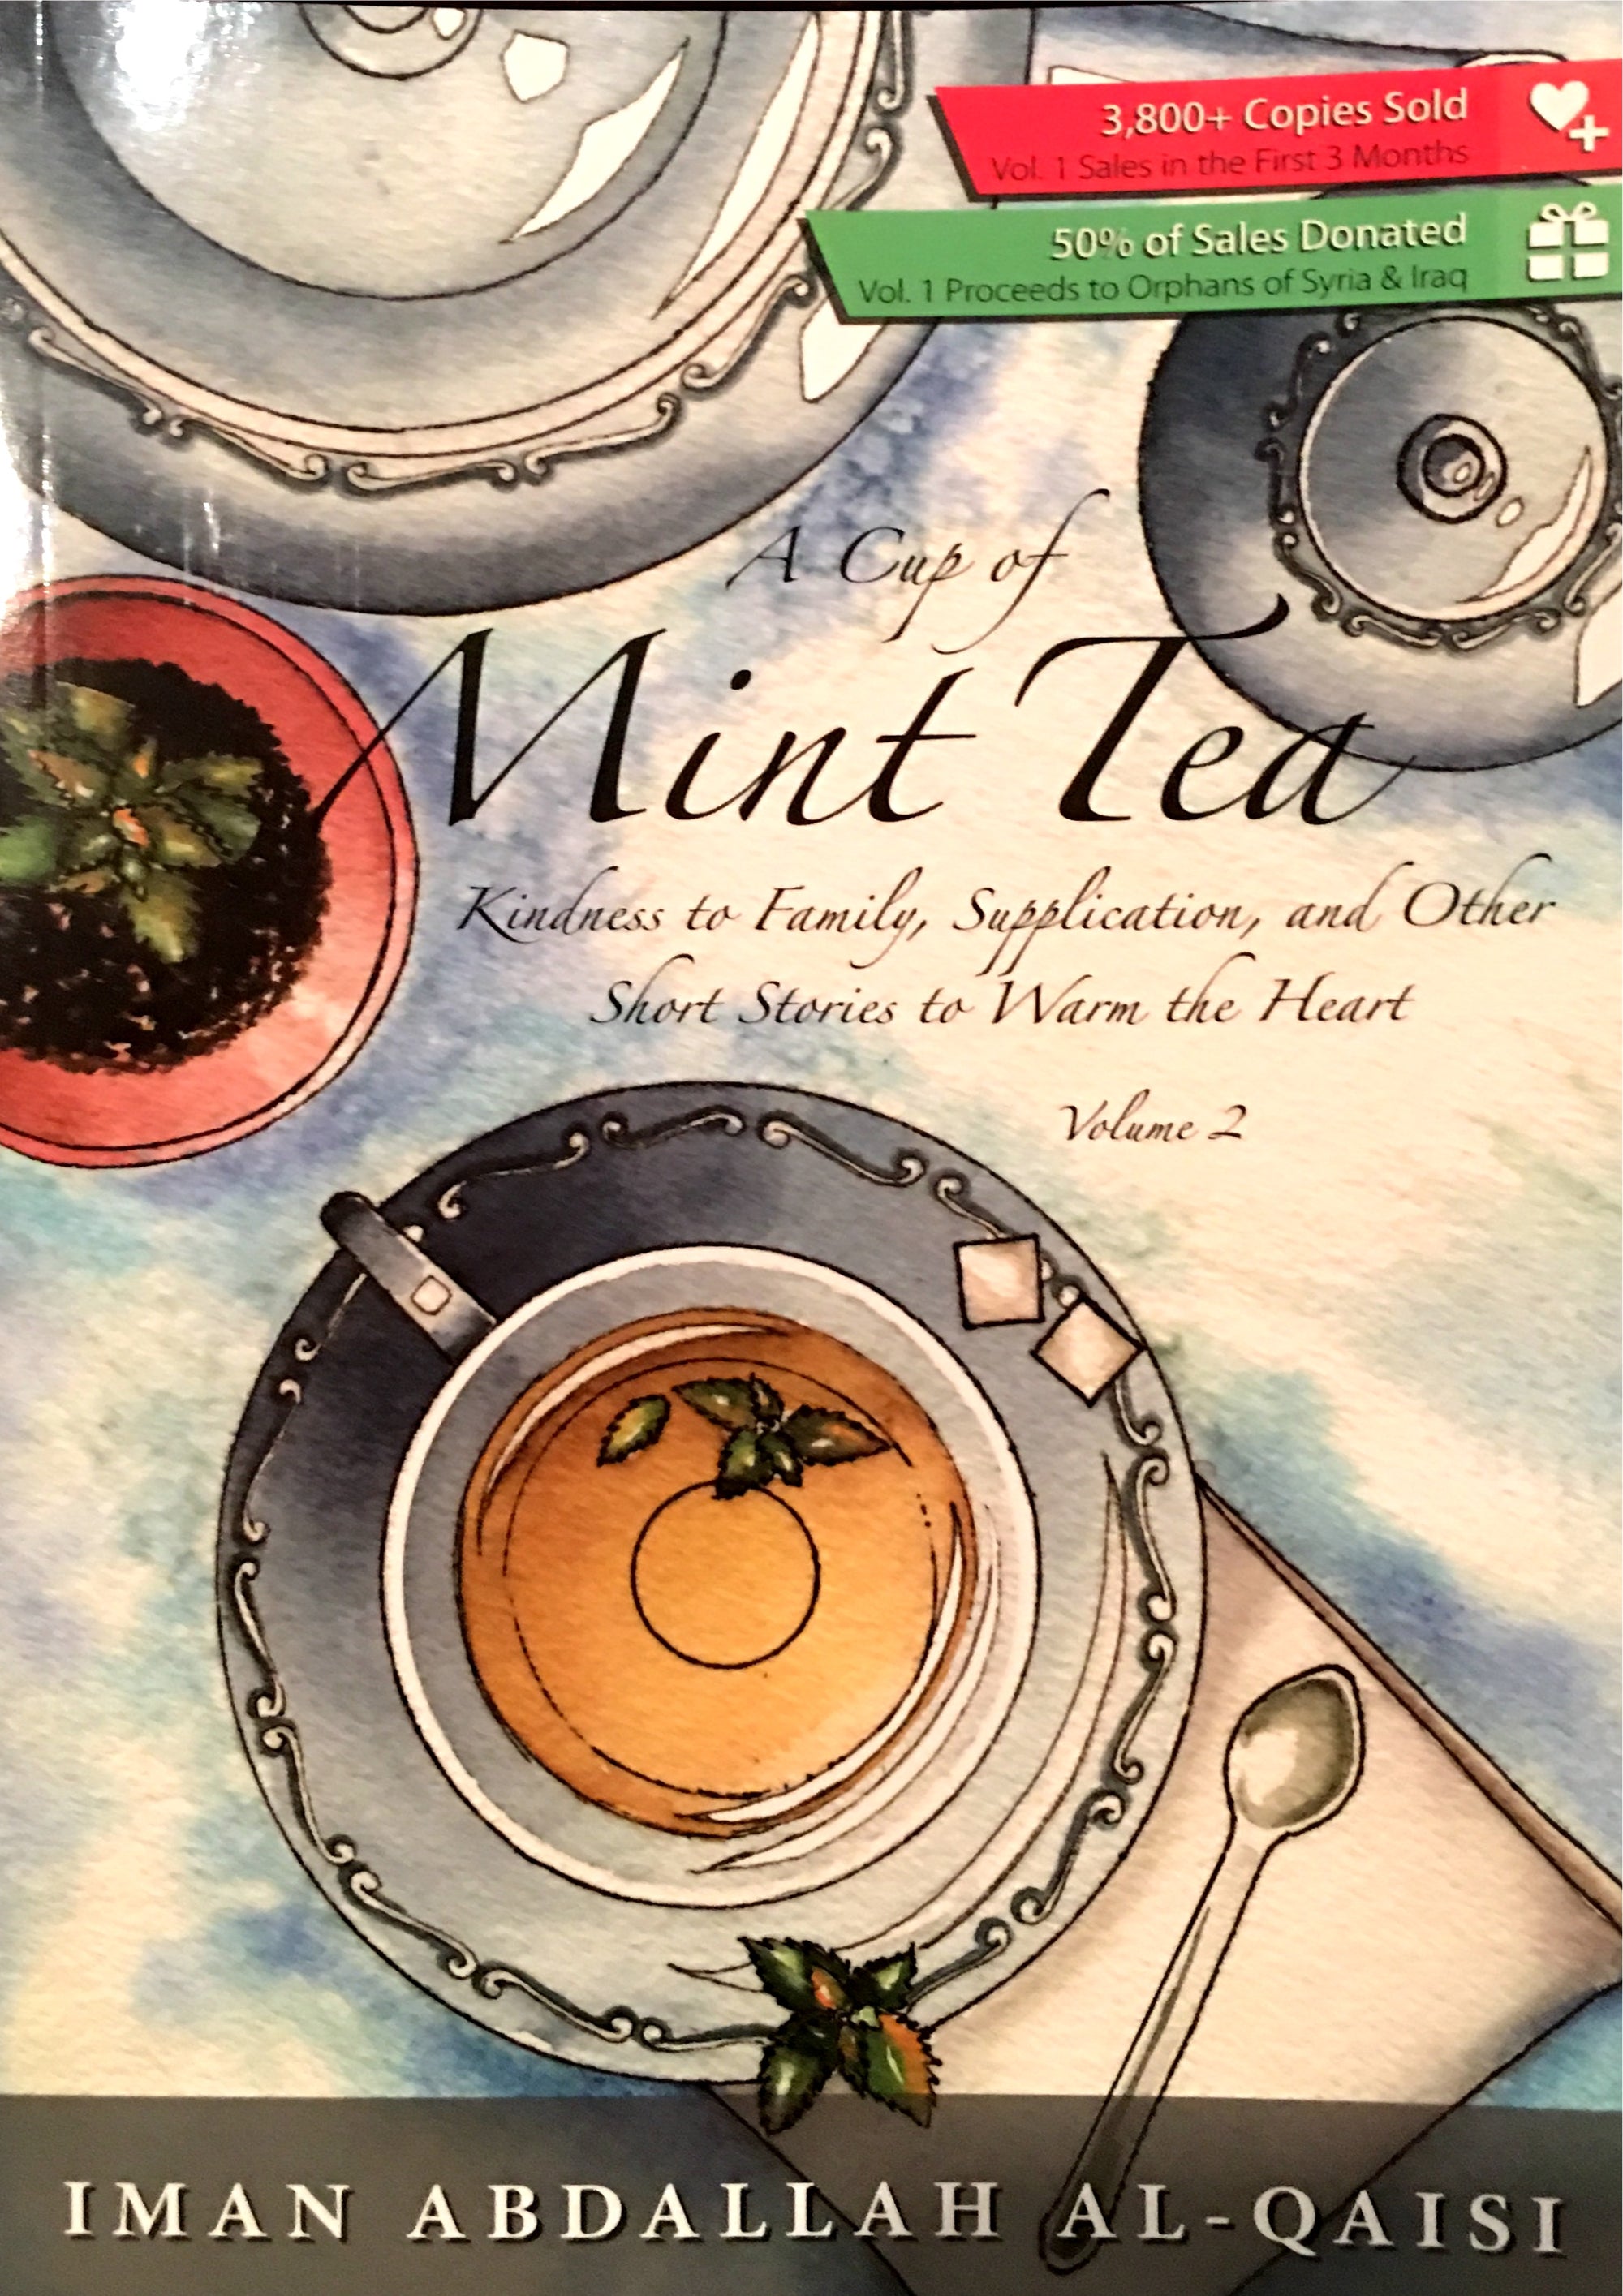 A Cup of Mint Tea Volume 2 (English Edition) فنجان من شاي النعناع الجزء الثاني